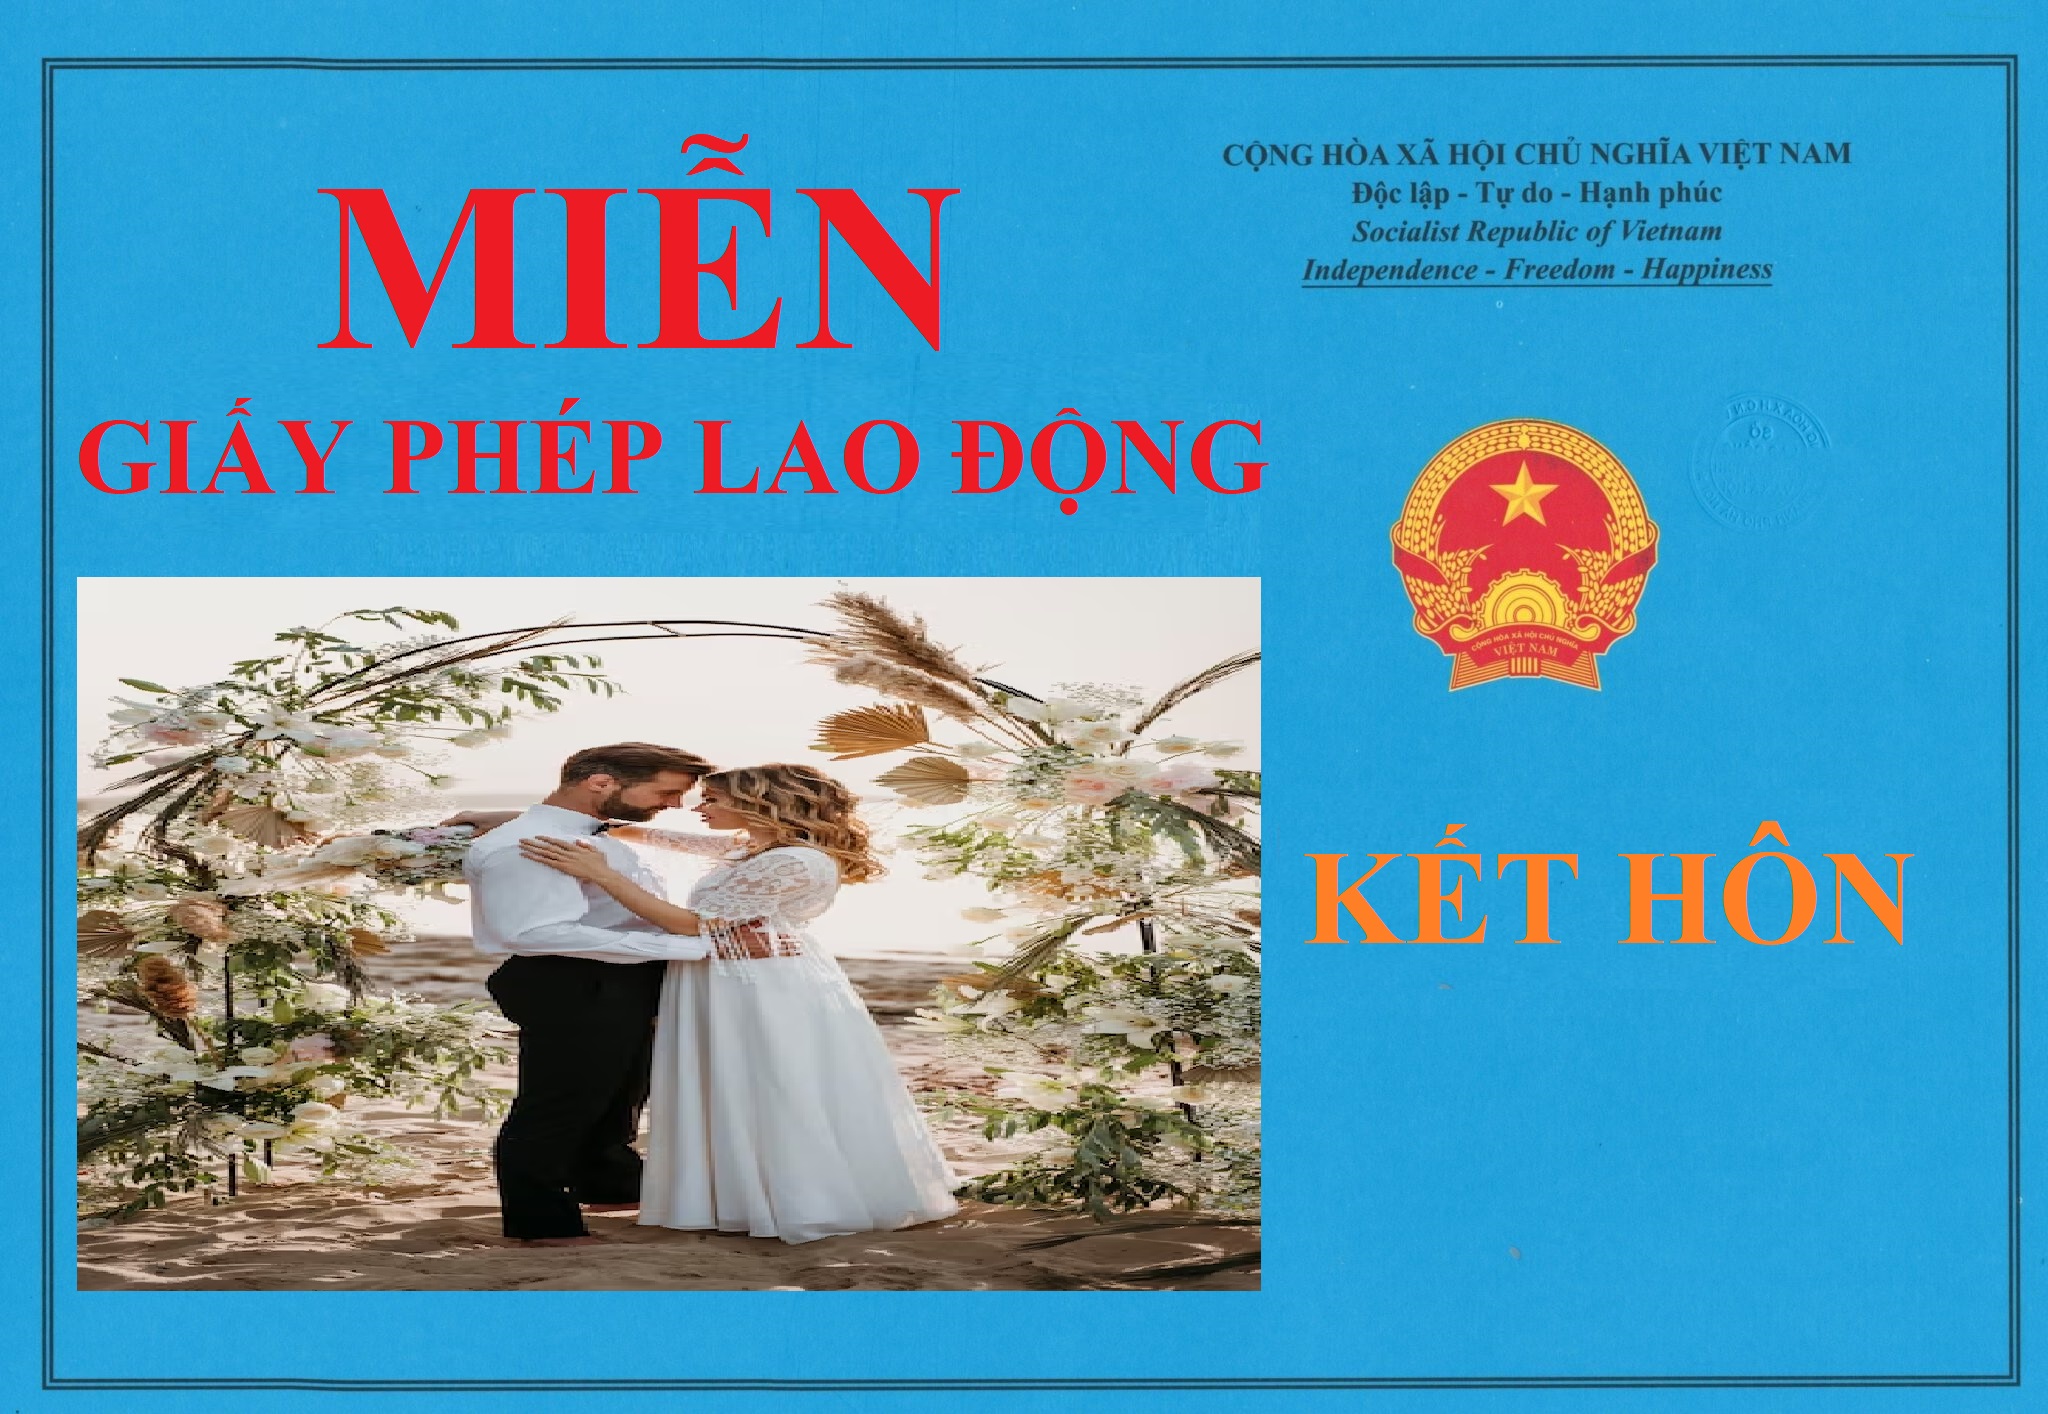 Miễn Giấy phép lao động theo diện kết hôn với người Việt Nam